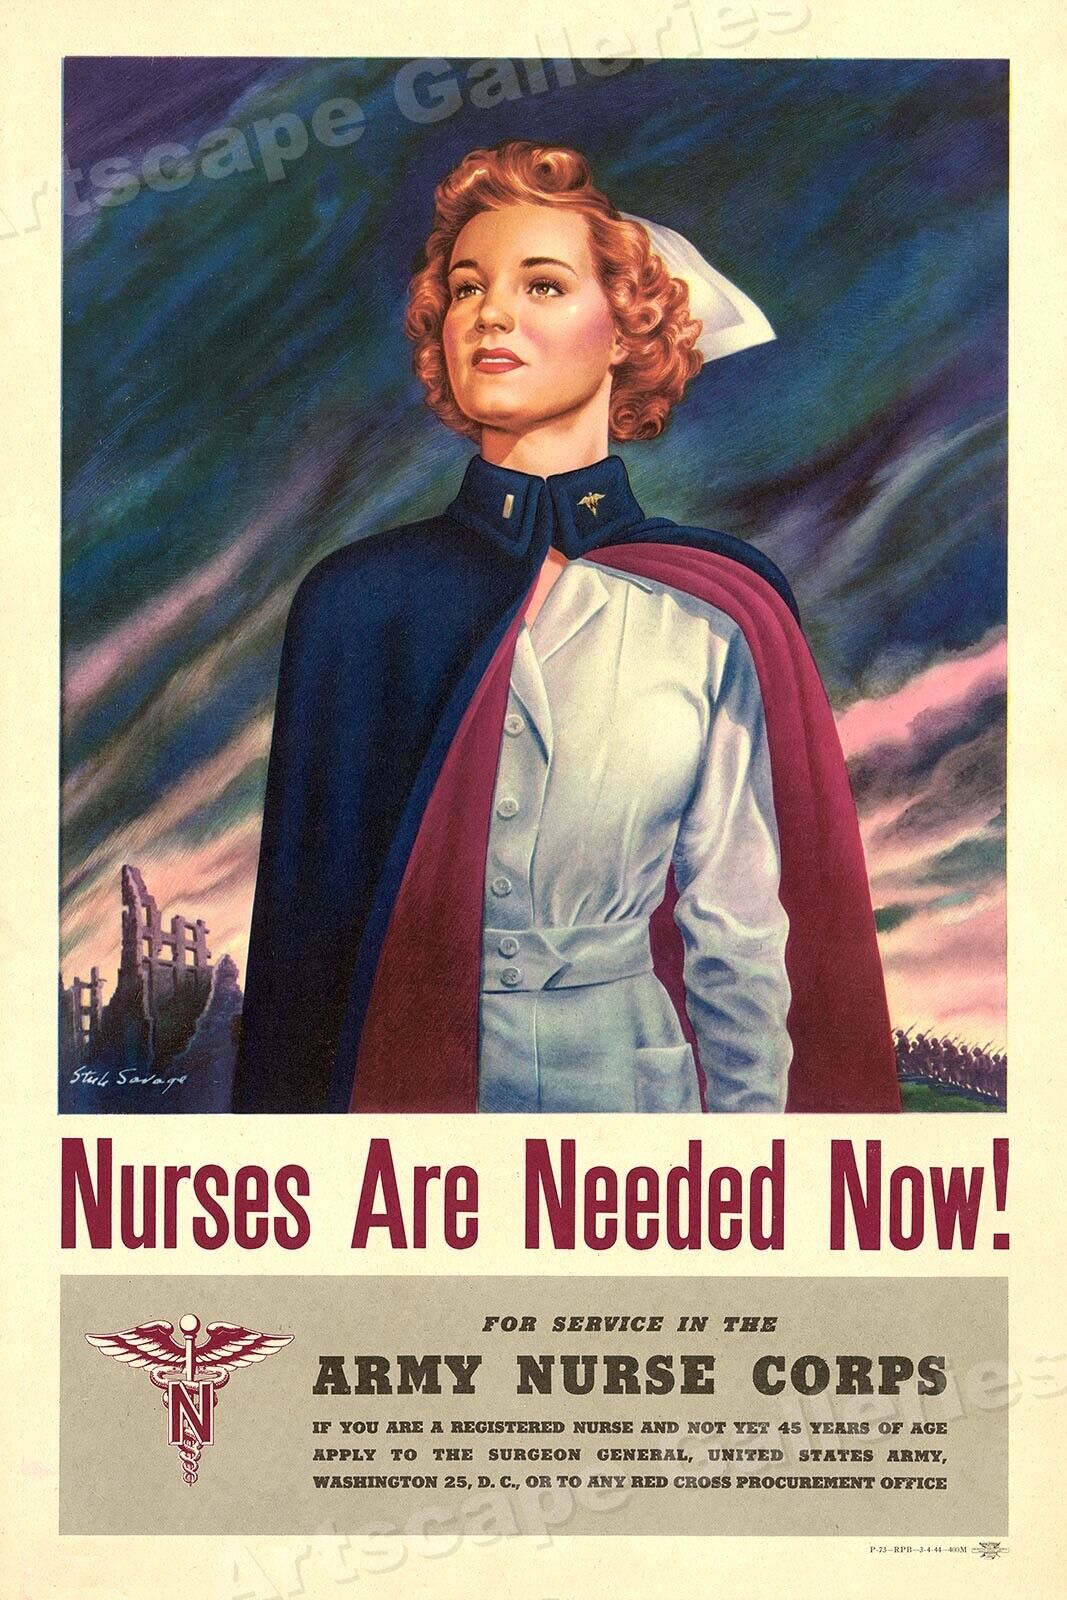 Army Nurse Corps Nurses are Needed Now 1944 Nursing War Poster - 24x36